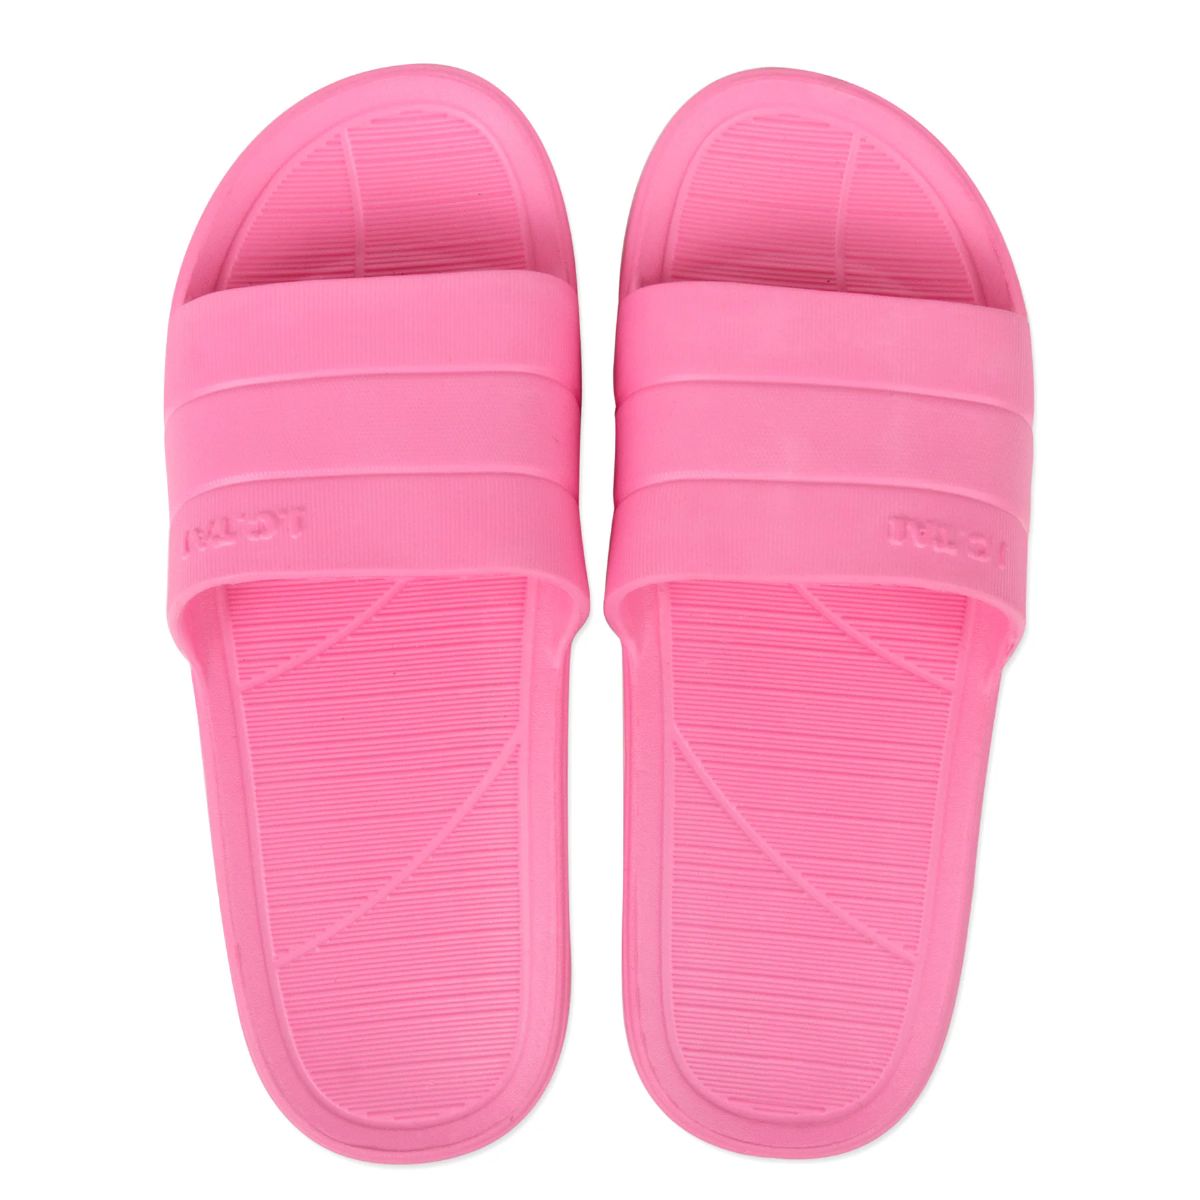 50 Pieces of Women's Pink Slide Sandals